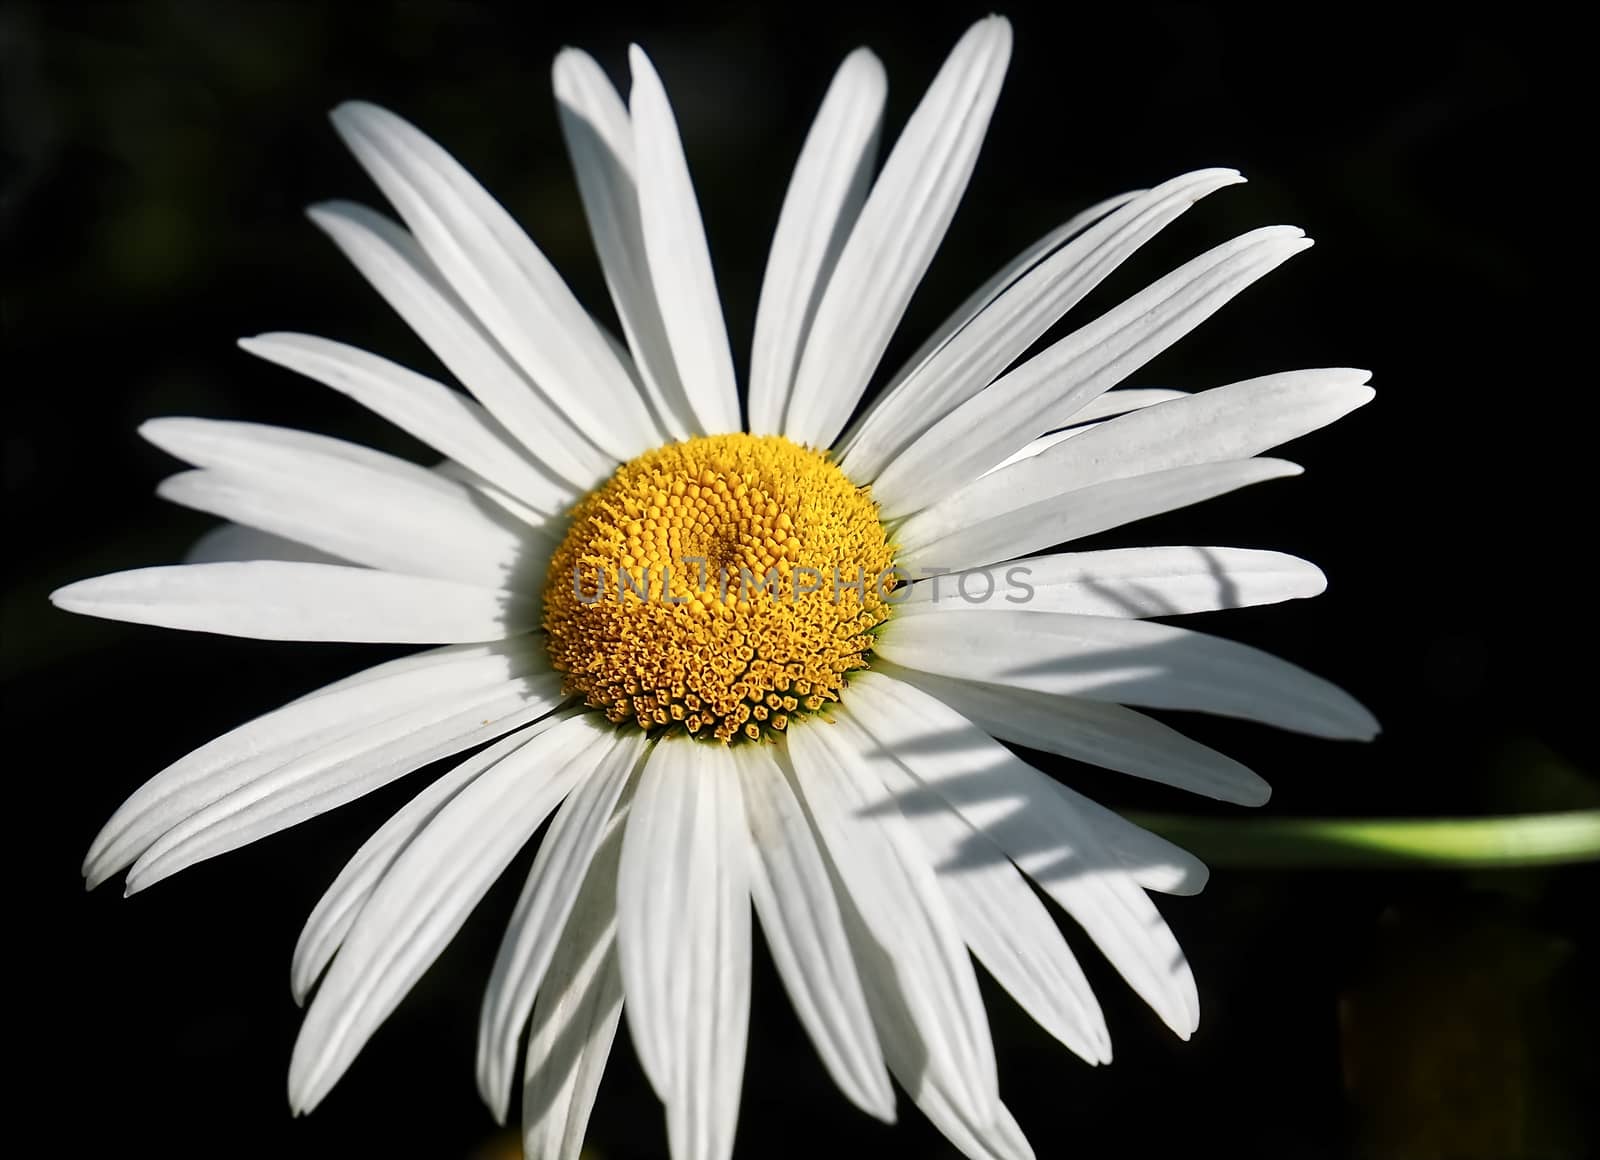 Beautiful white daisy flower with black background by Stimmungsbilder